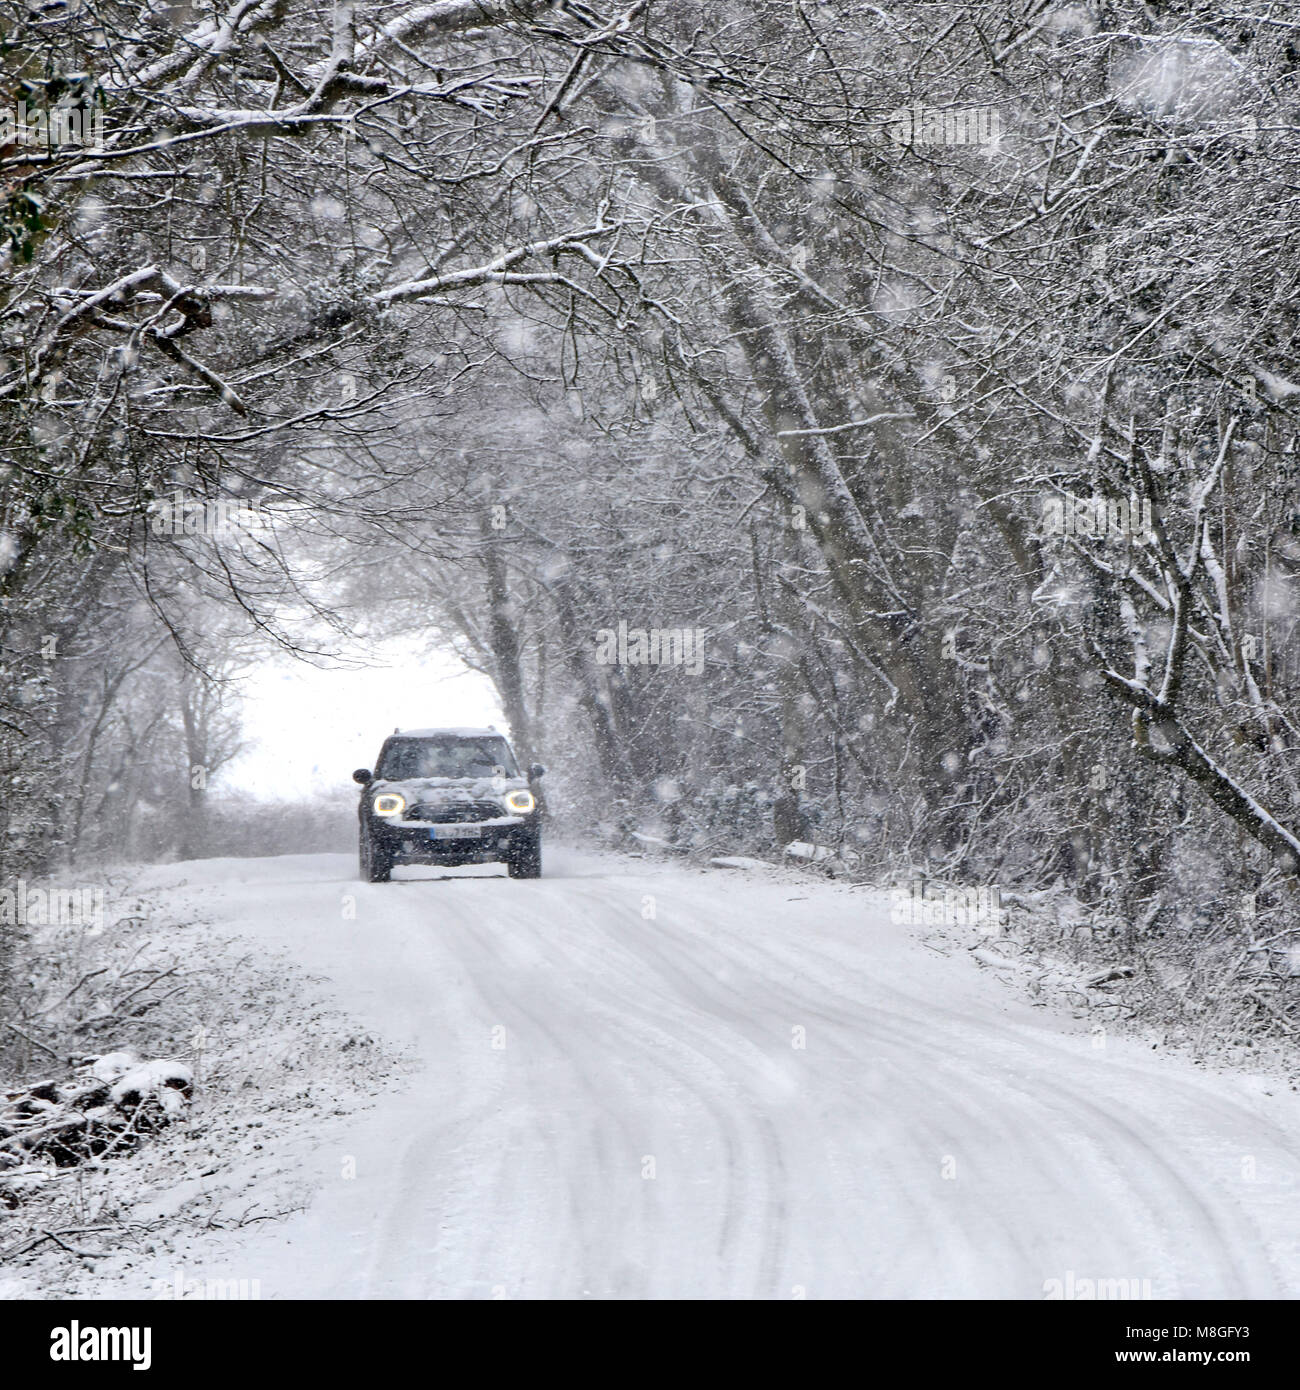 Phares de voiture allumés conduite à travers la neige tombante sur la route de campagne glacée neige couvert tunnel d'arbre dans la scène boisée arbres enneigés hiver météo Angleterre Royaume-Uni Banque D'Images